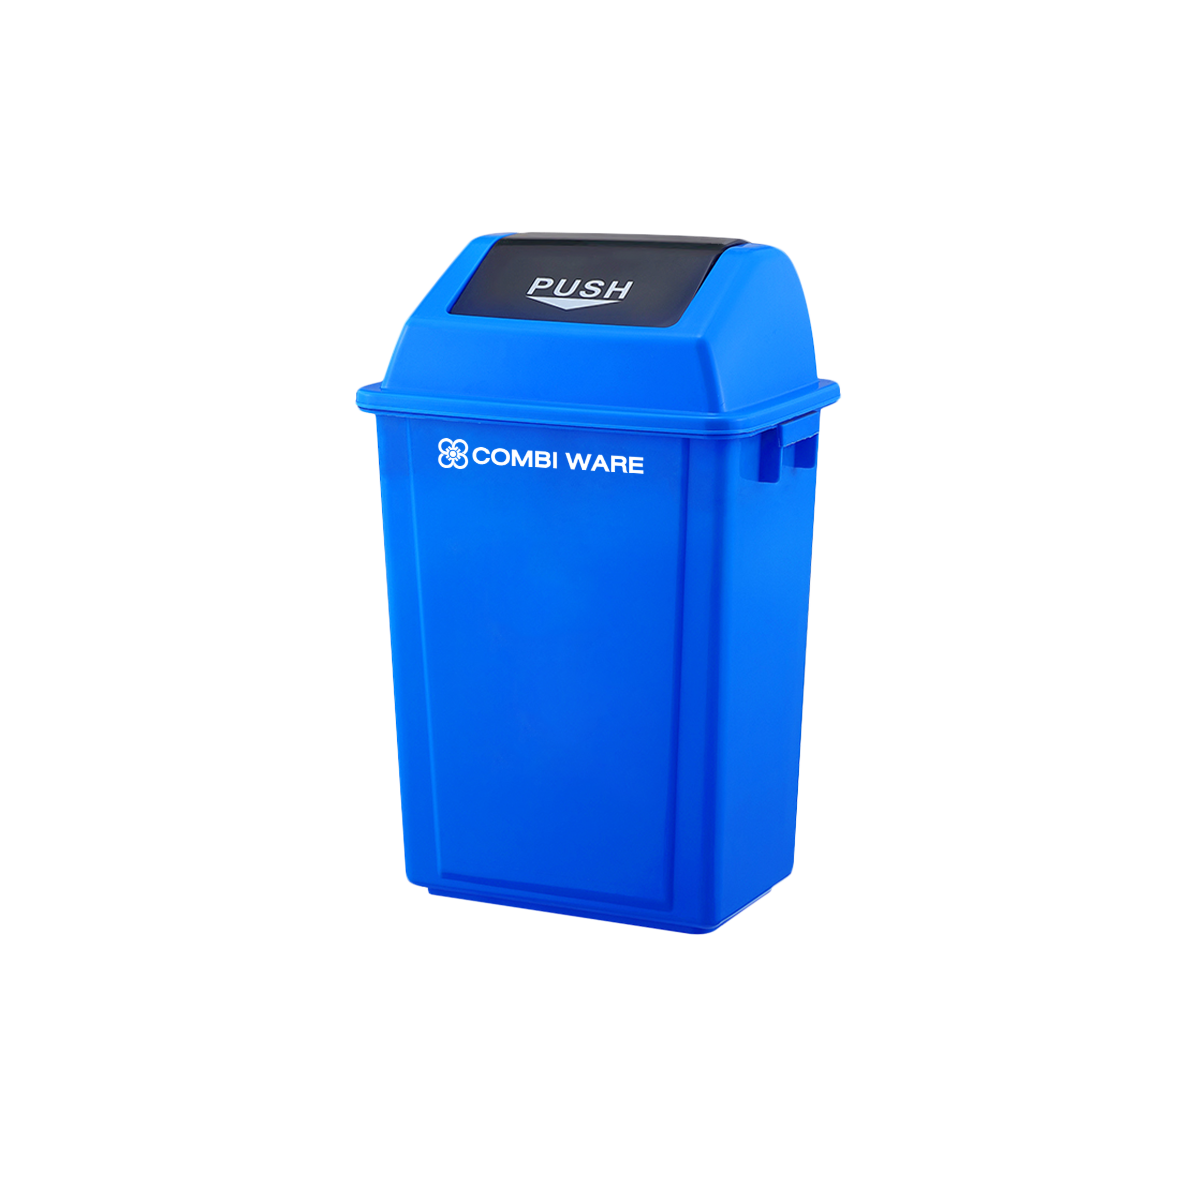 ถังขยะพลาสติก ขนาด 40 ลิตร แบบฝาผลัก สีน้ำเงิน